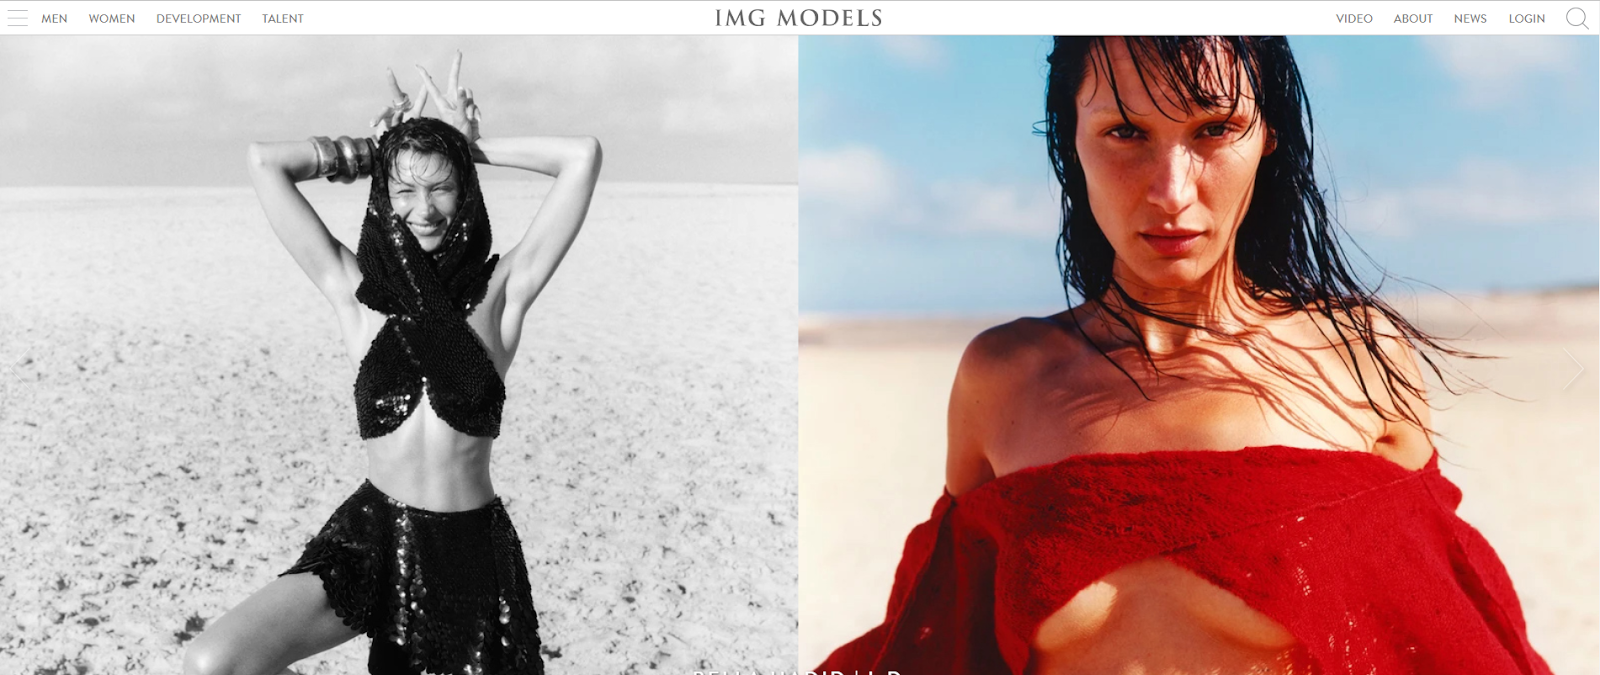 IMG Models